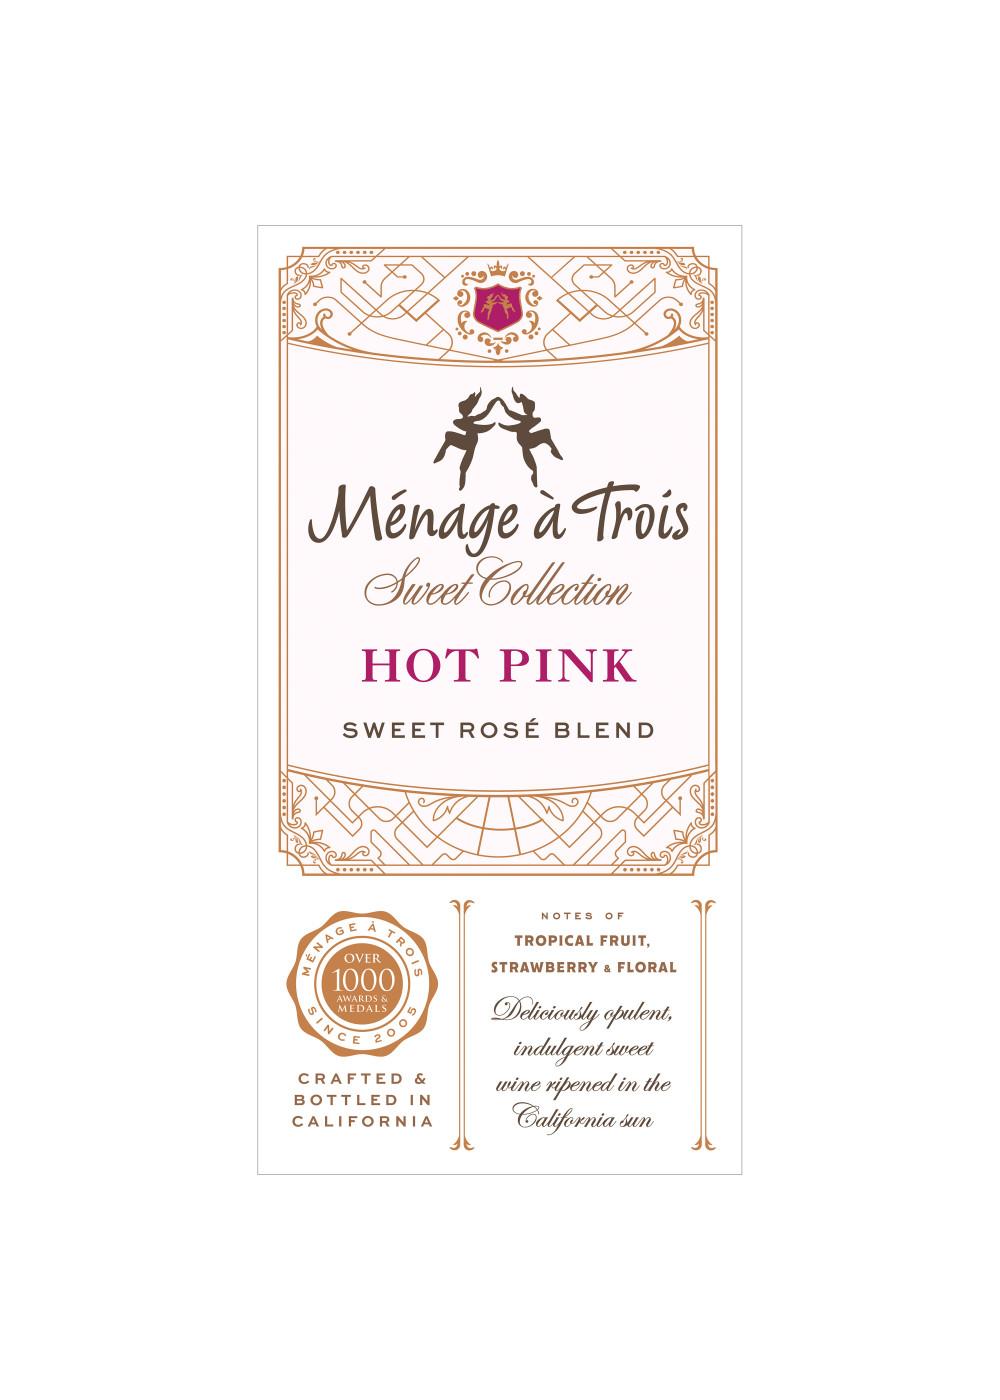 Ménage à Trois Hot Pink Sweet Rosé Blend Wine; image 2 of 7